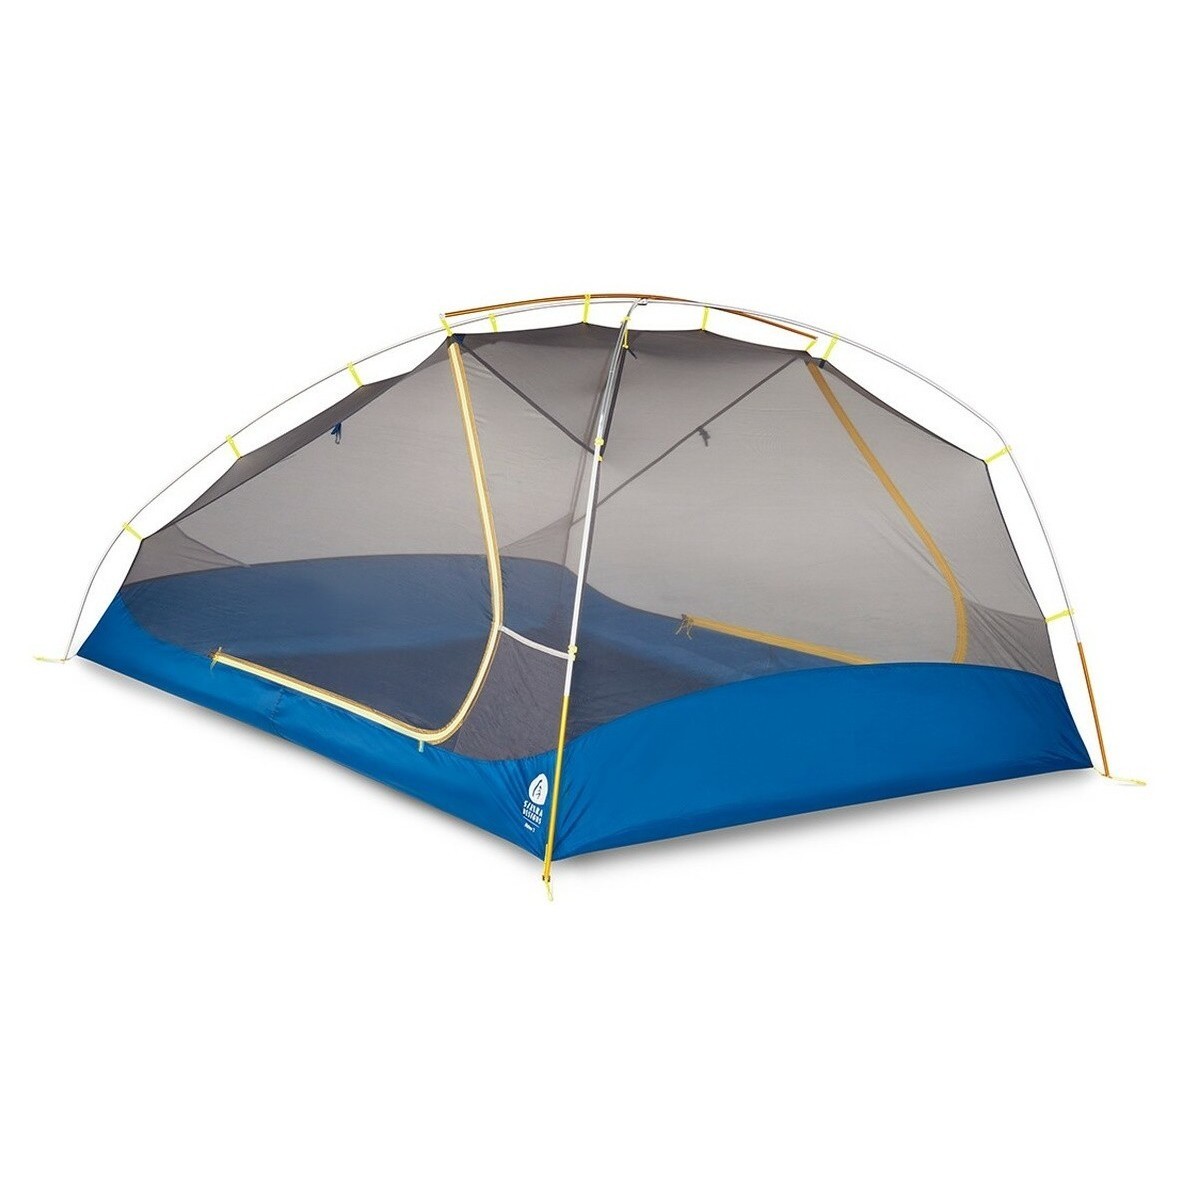 Sierra Trail-3 палатка. Sierra Designs Meteor 2. Товары для туризма и активного отдыха. Дизайн шатра. В школе есть трехместные туристические палатки какое